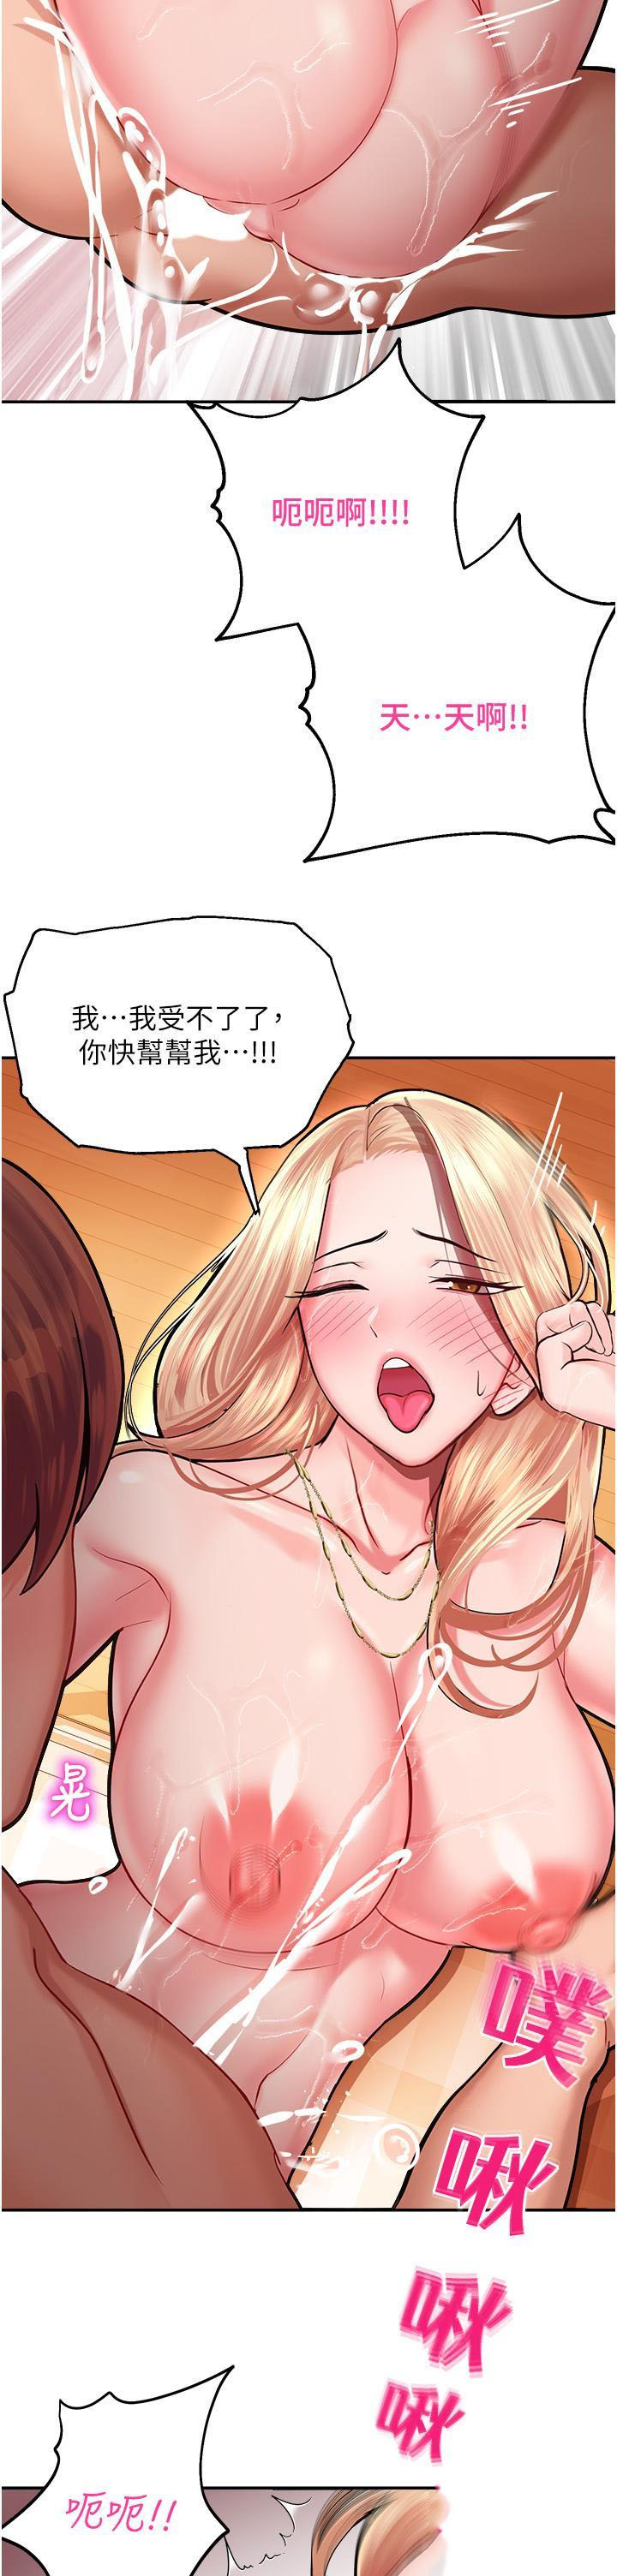 韩国污漫画 命運濕樂園 第15话 宏建出「头」天! 18